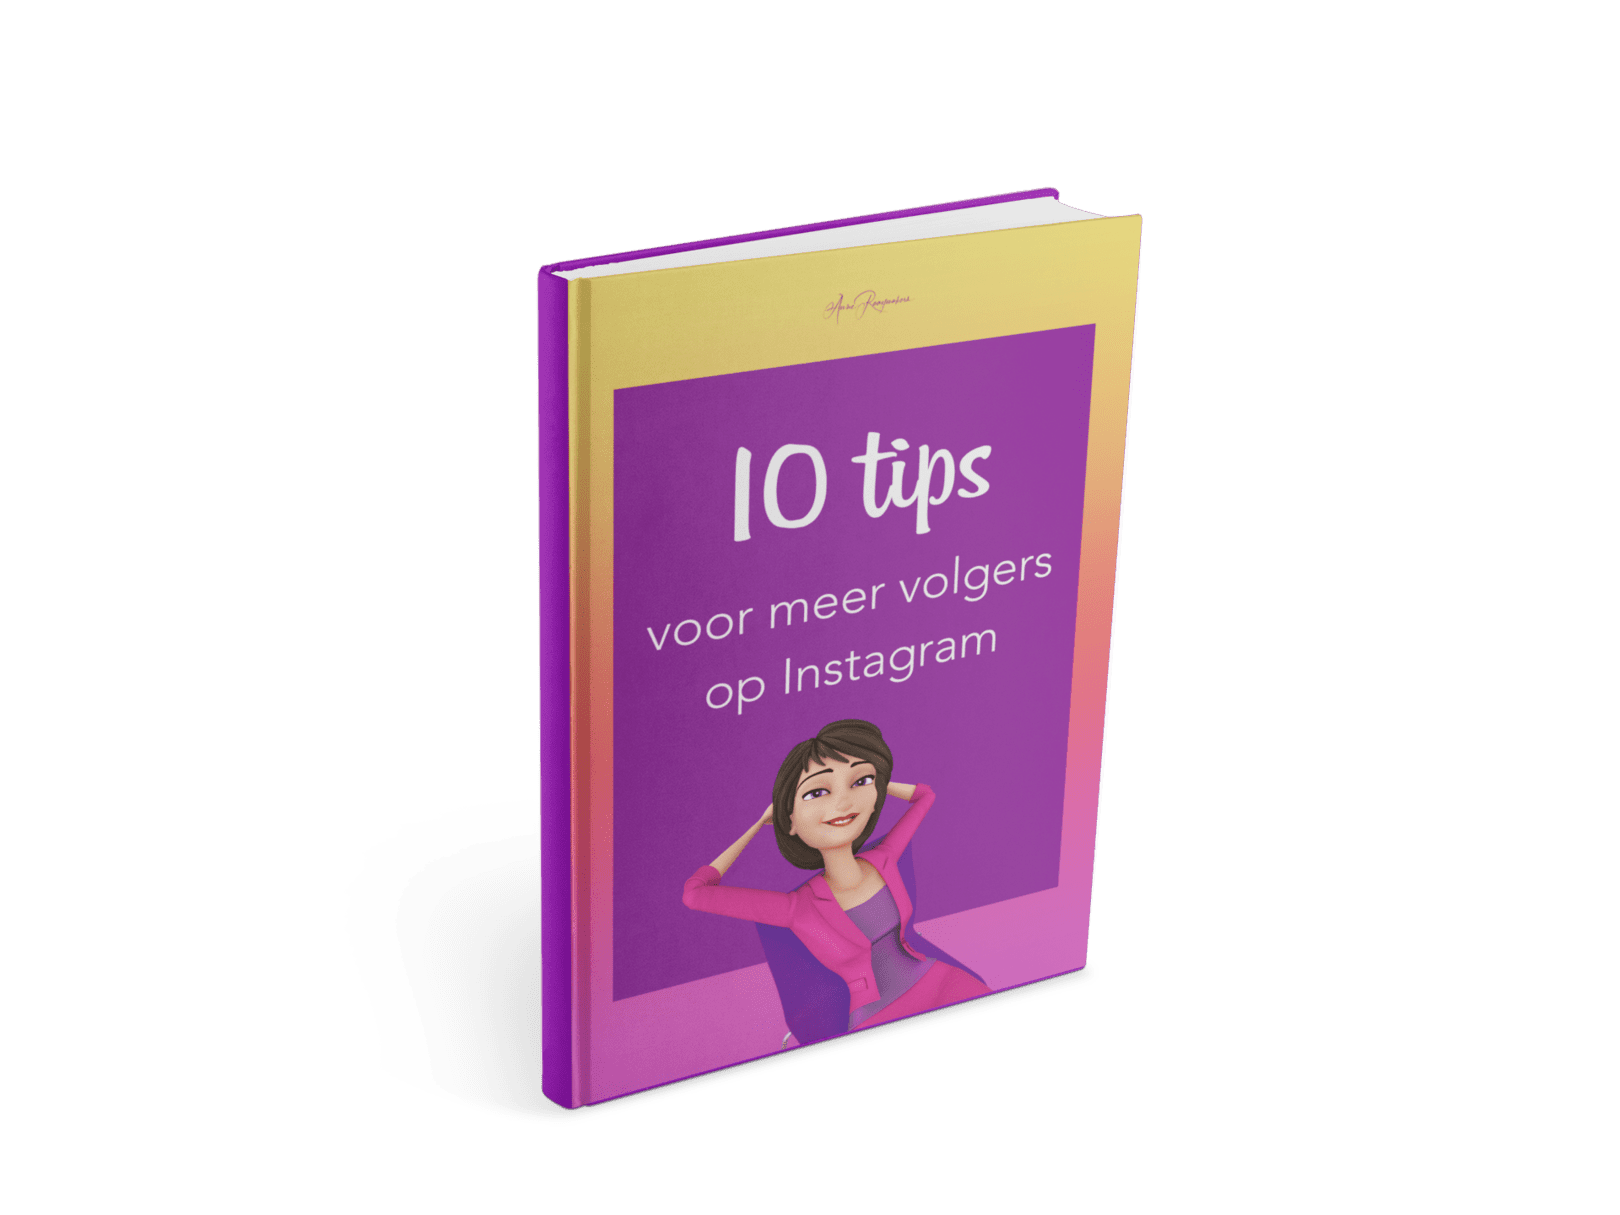  10 tips voor meer volgers op Instagram